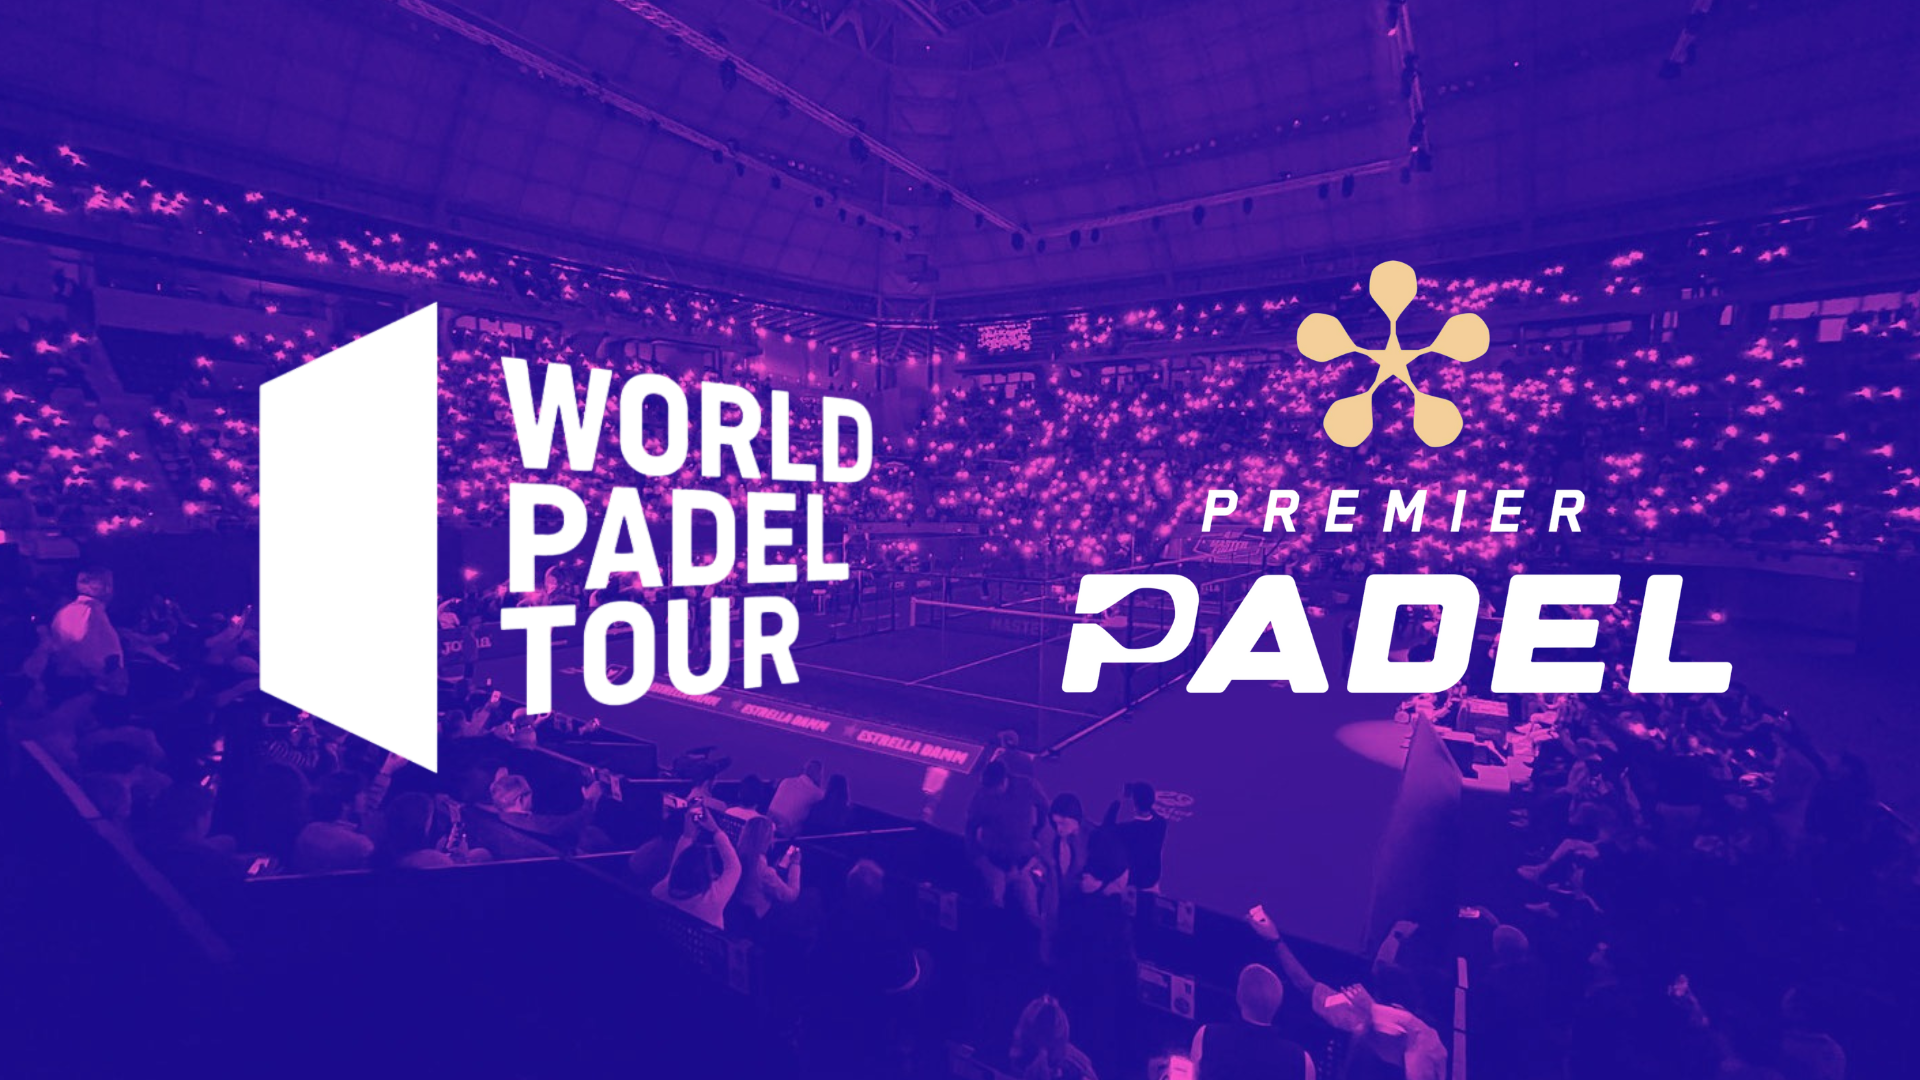 Le World Padel Tour et Premier Padel poden ser realment un?